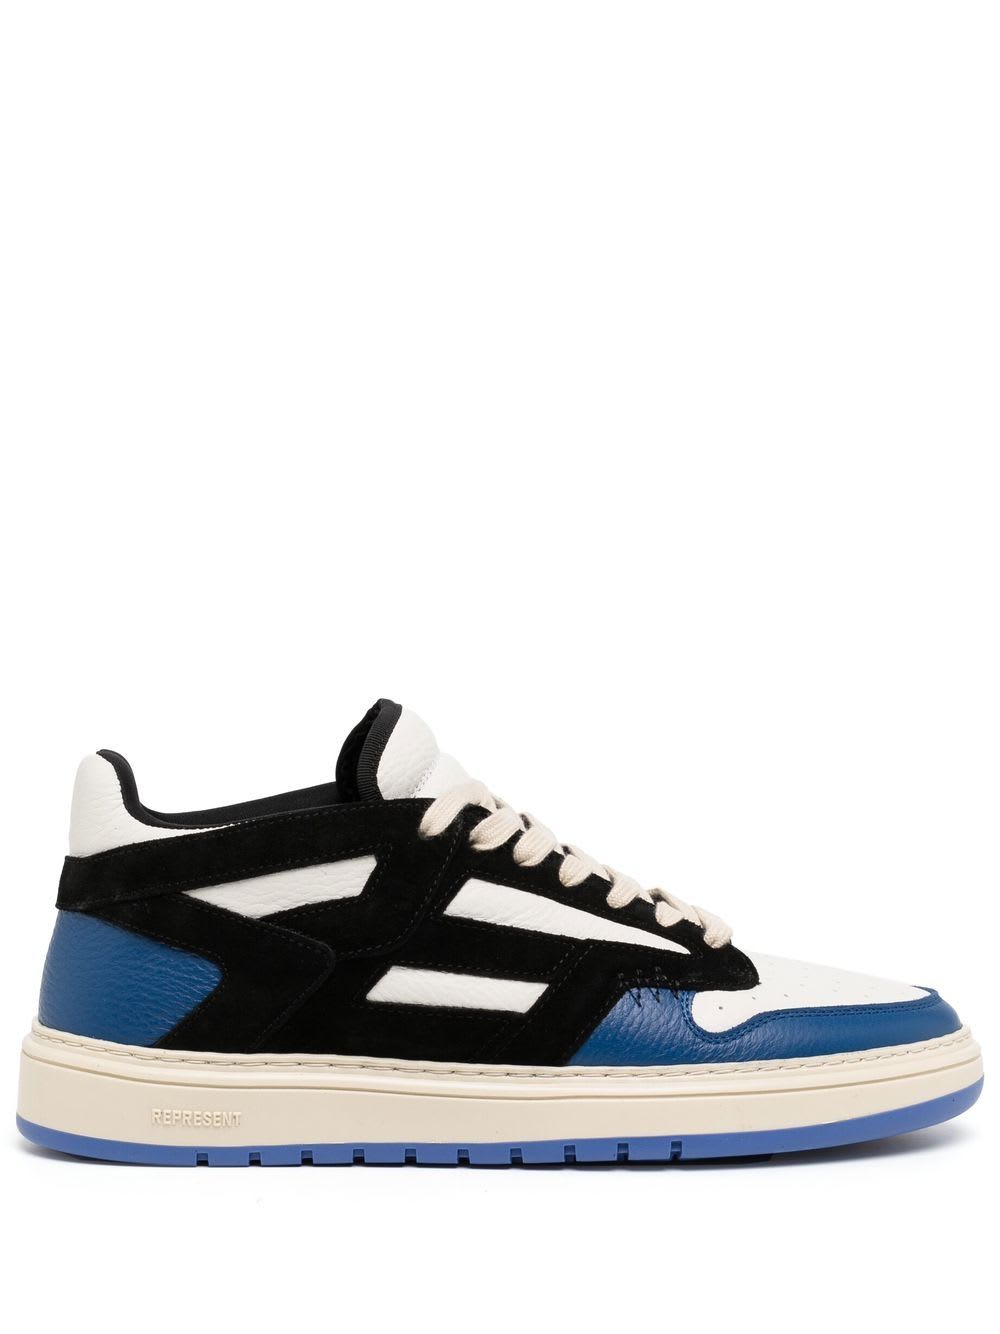 Shop Represent Reptor Low Sneakers In Black Cobalt Blue